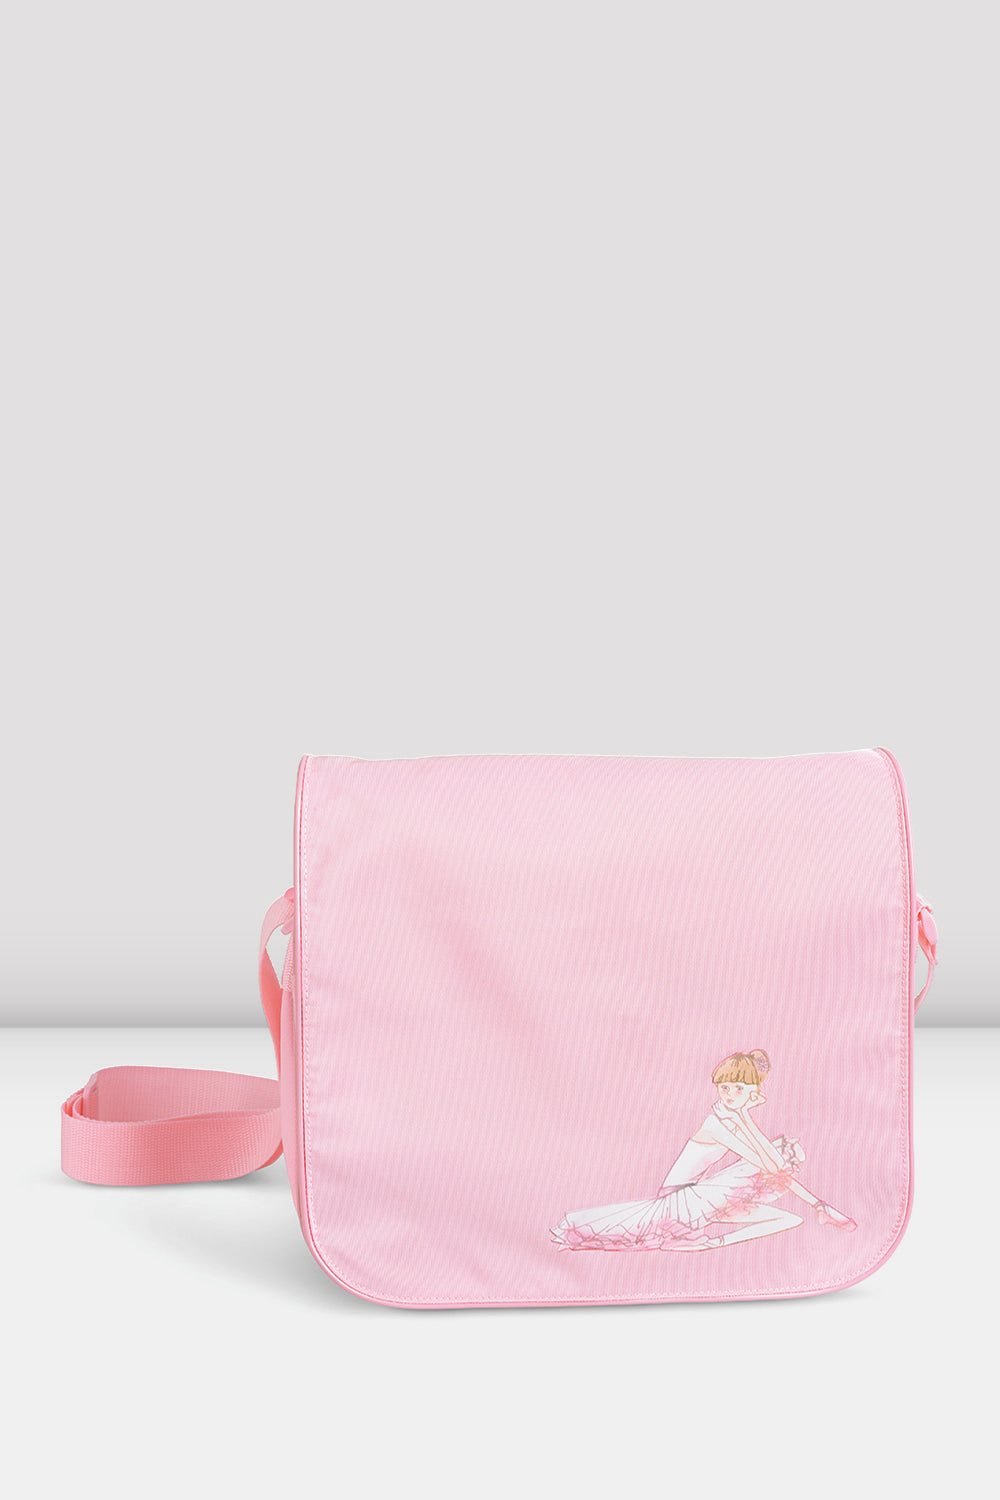 BLOCH Girls Shoulder Bag, Light Pink